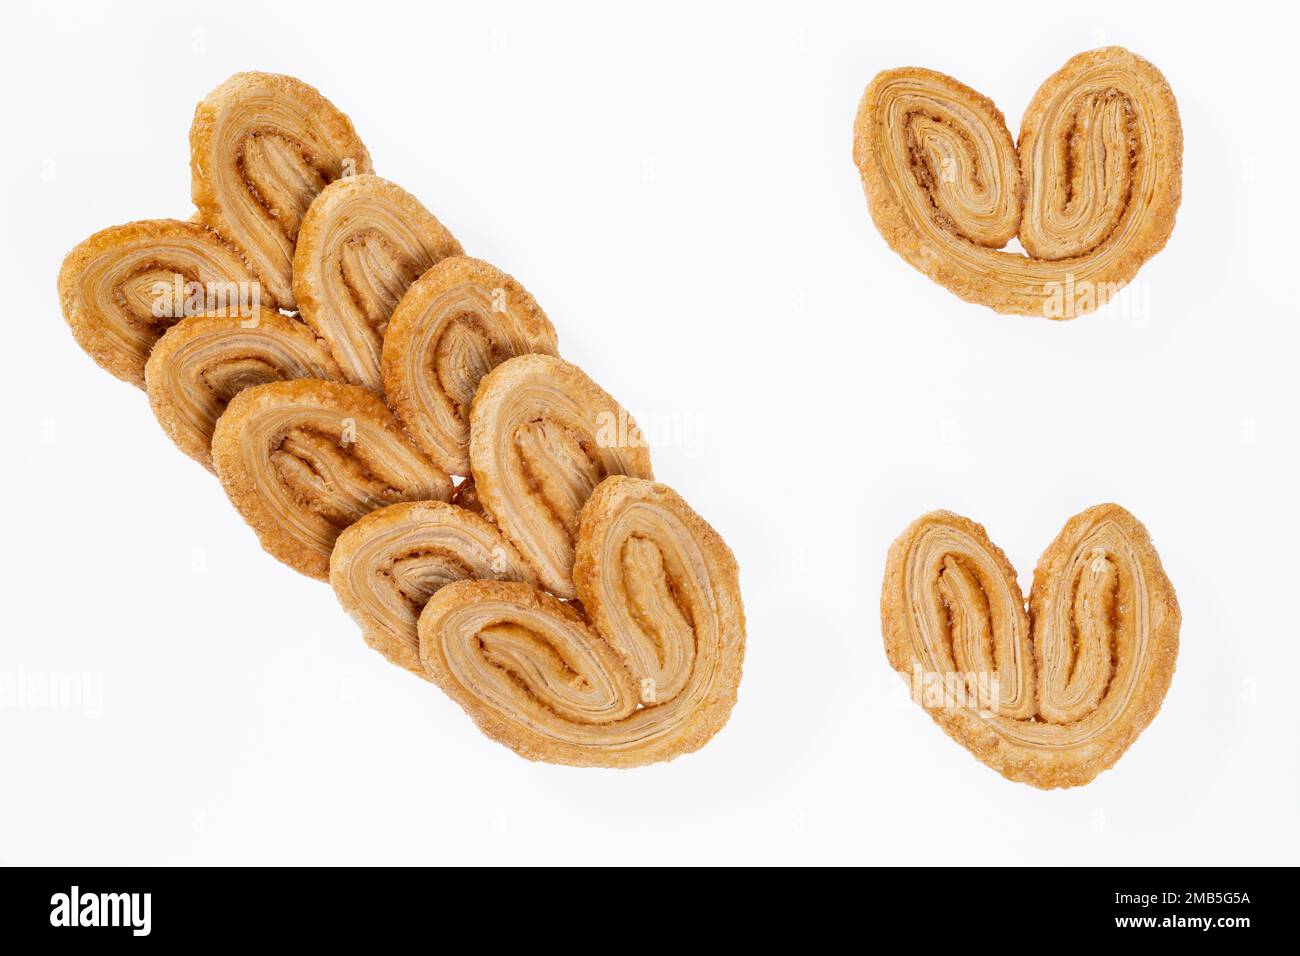 Bäckerei Und Gebäck – Leckere Blätterteigherzen Mit Zucker Bedeckt; Weißer Fotohintergrund Stockfoto